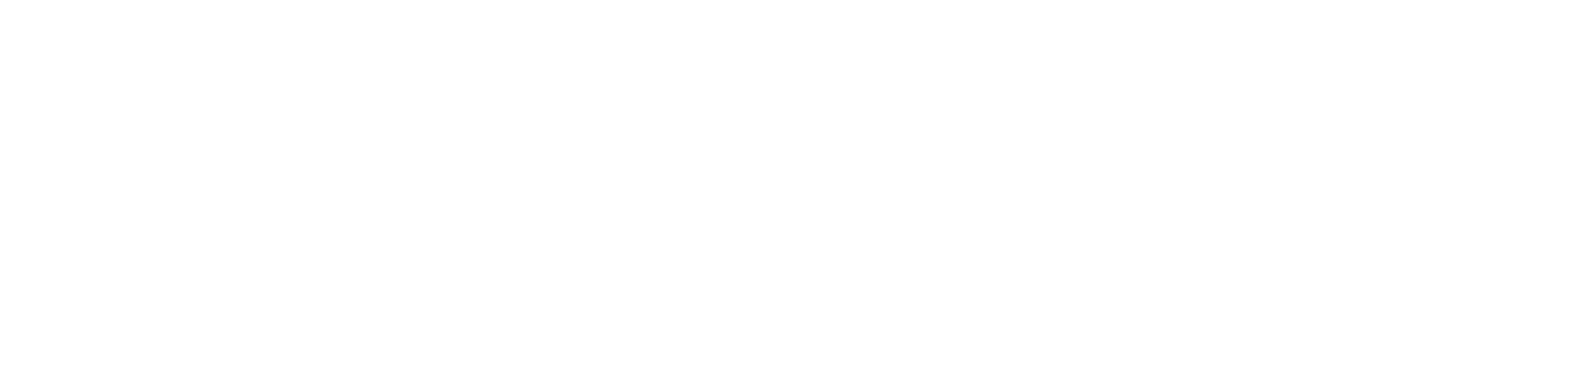 Doximity Logo groß für dunkle Hintergründe (transparentes PNG)